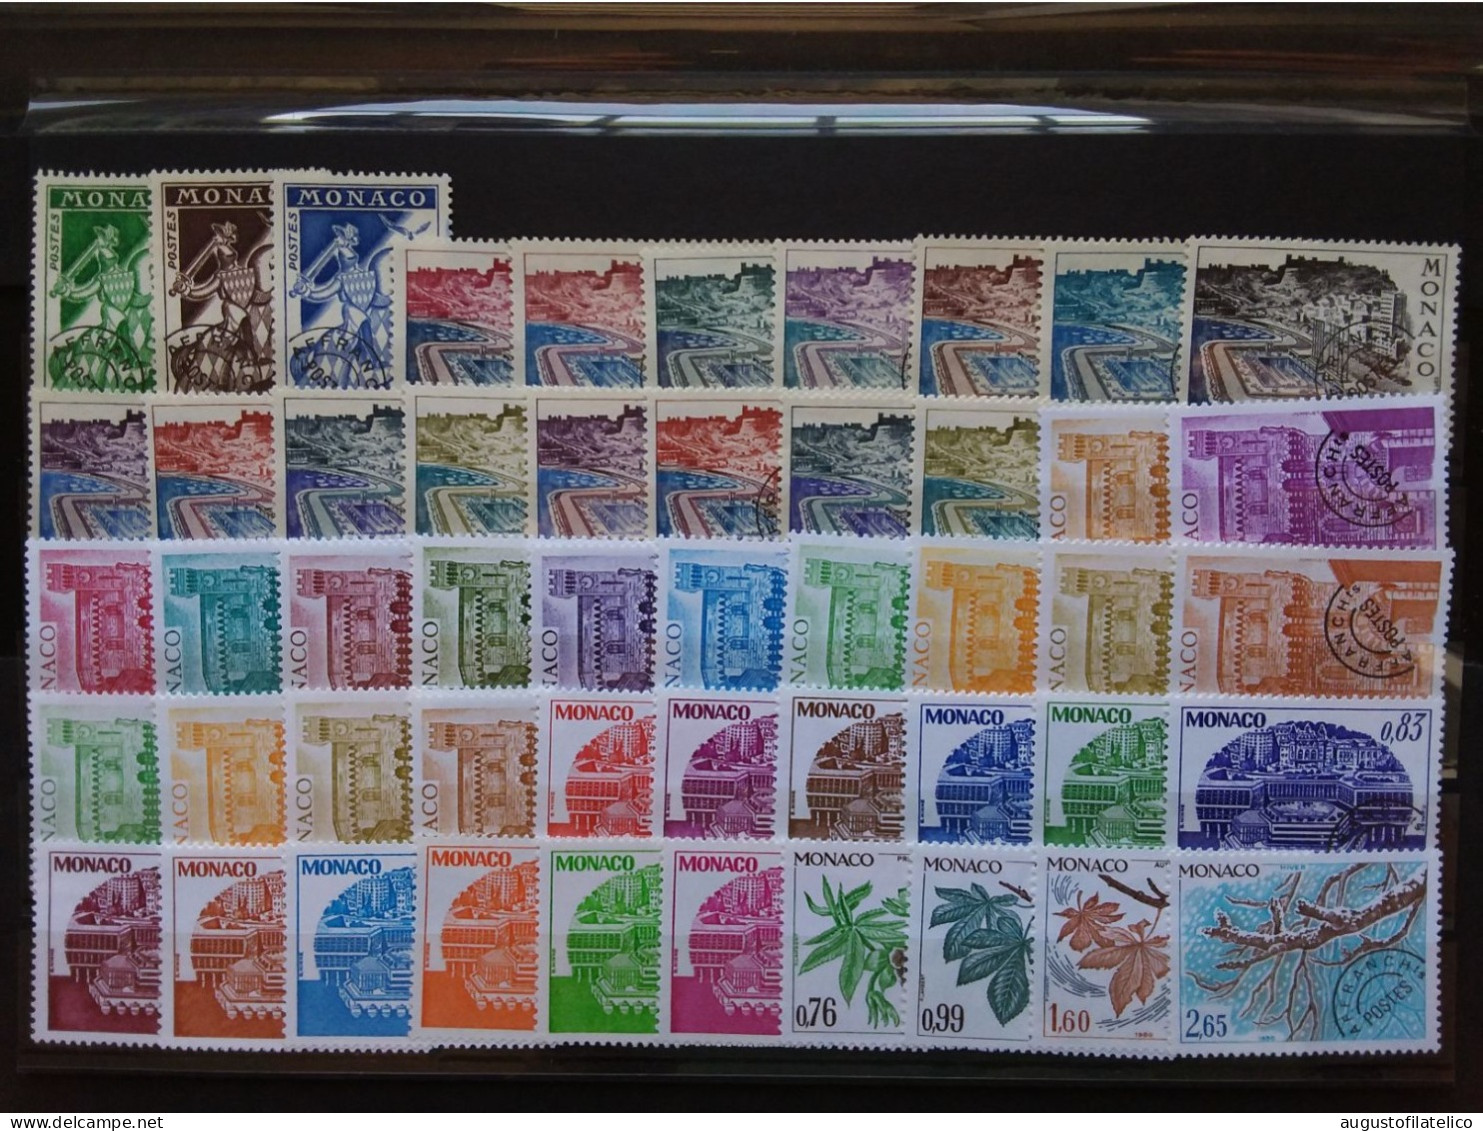 MONACO - Francobolli Per Stampati (preannullati) Anni '60/'80 - Nn. 20/69 Nuovi ** + Spese Postali - Unused Stamps